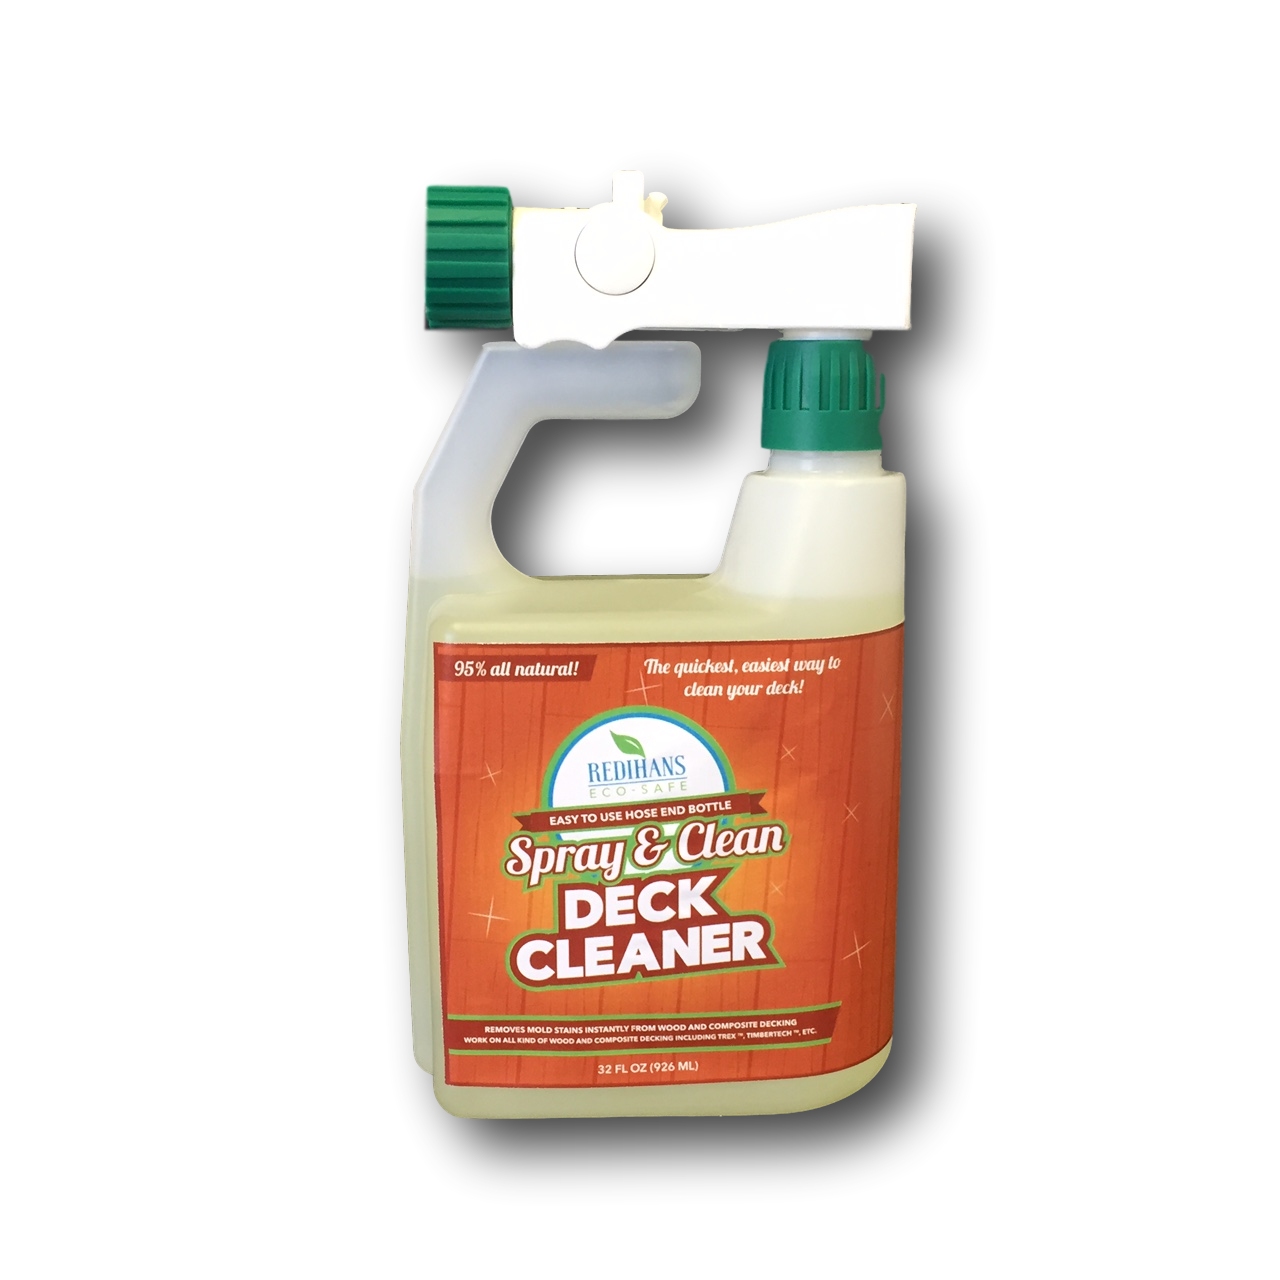 Redihans Eco-Safe Spray & Clean Deck Cleaner with Hose End Bottle